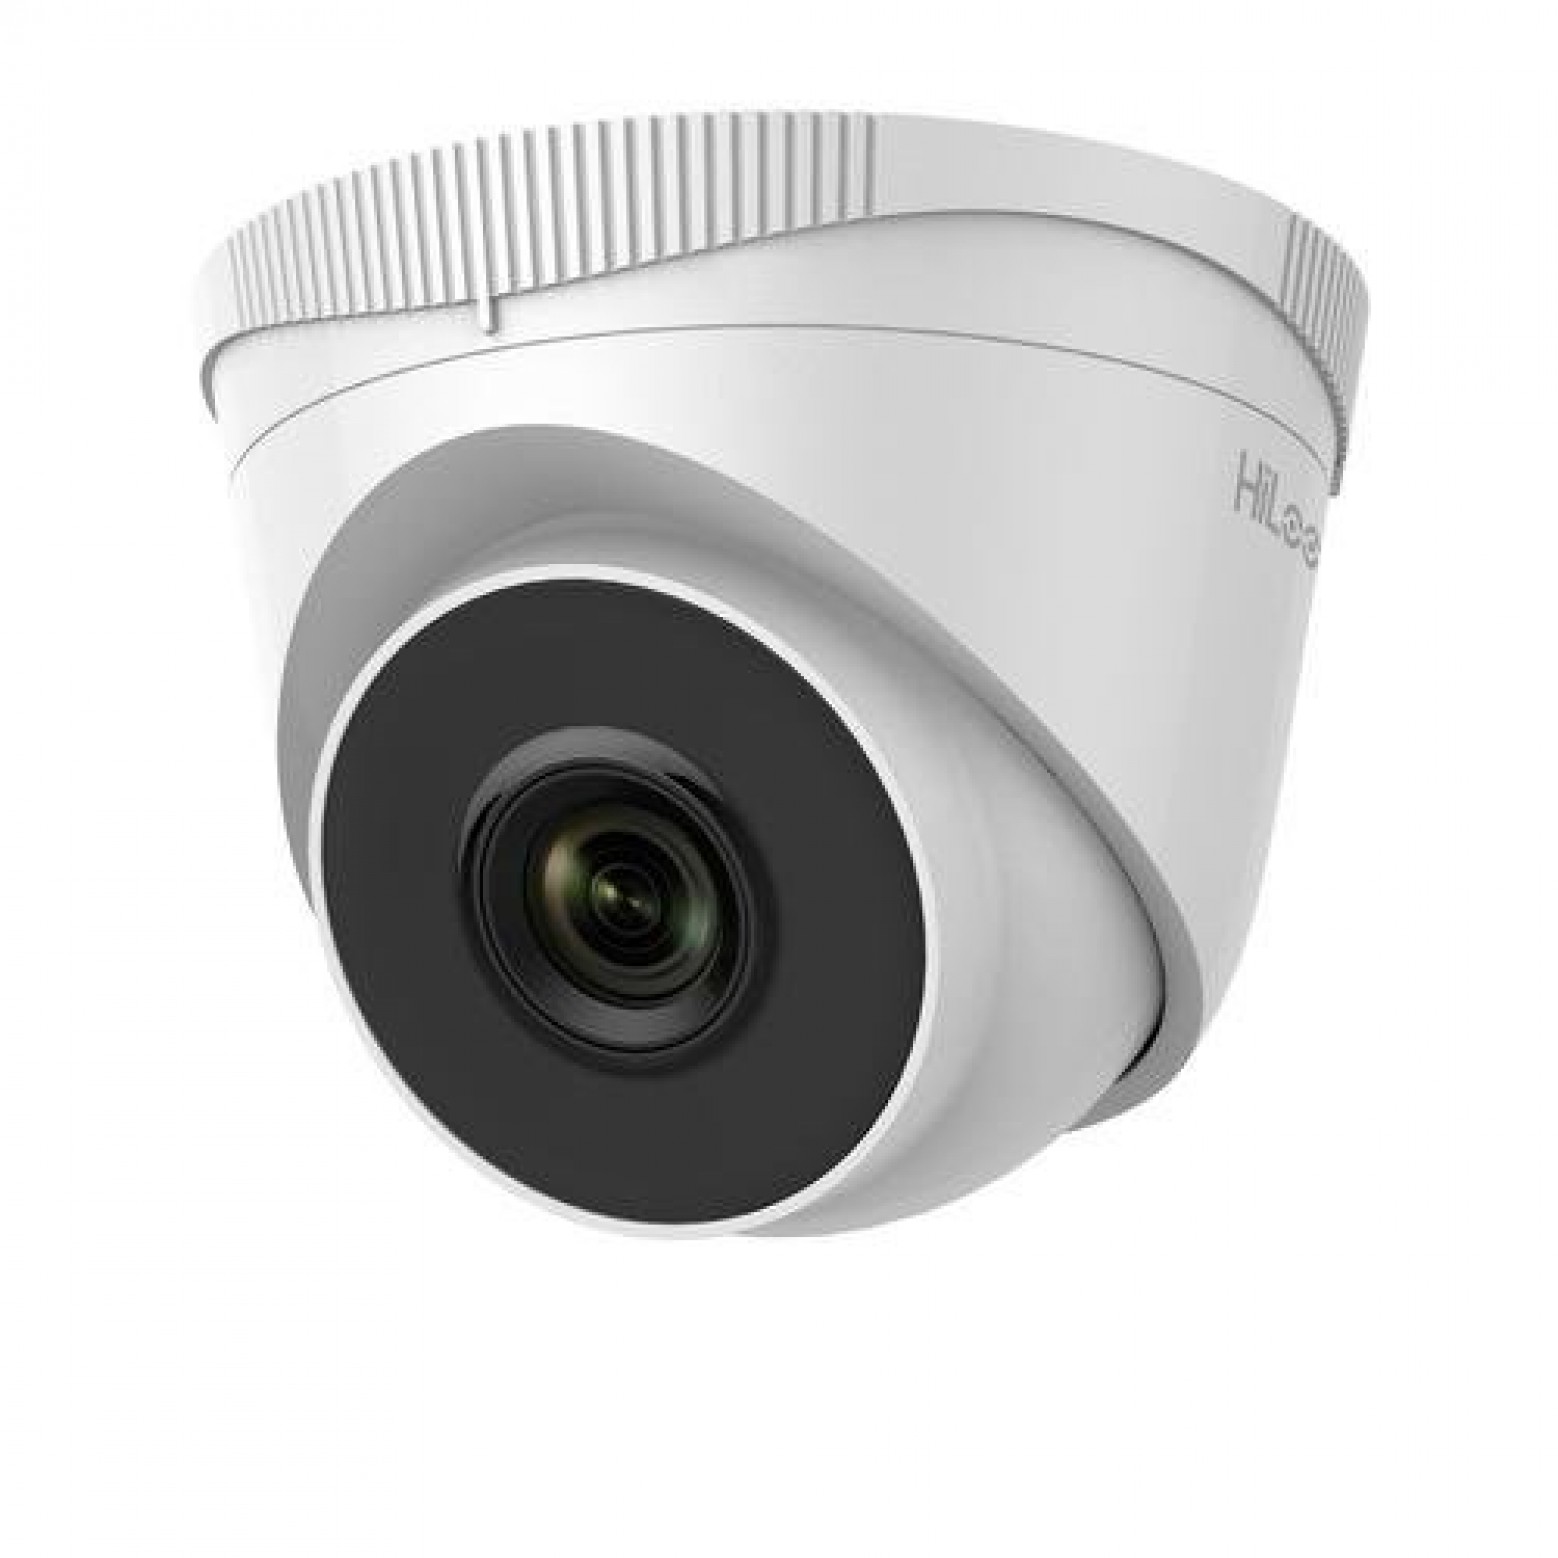 HiLook IPC-T220H 2 megapixel turret camera